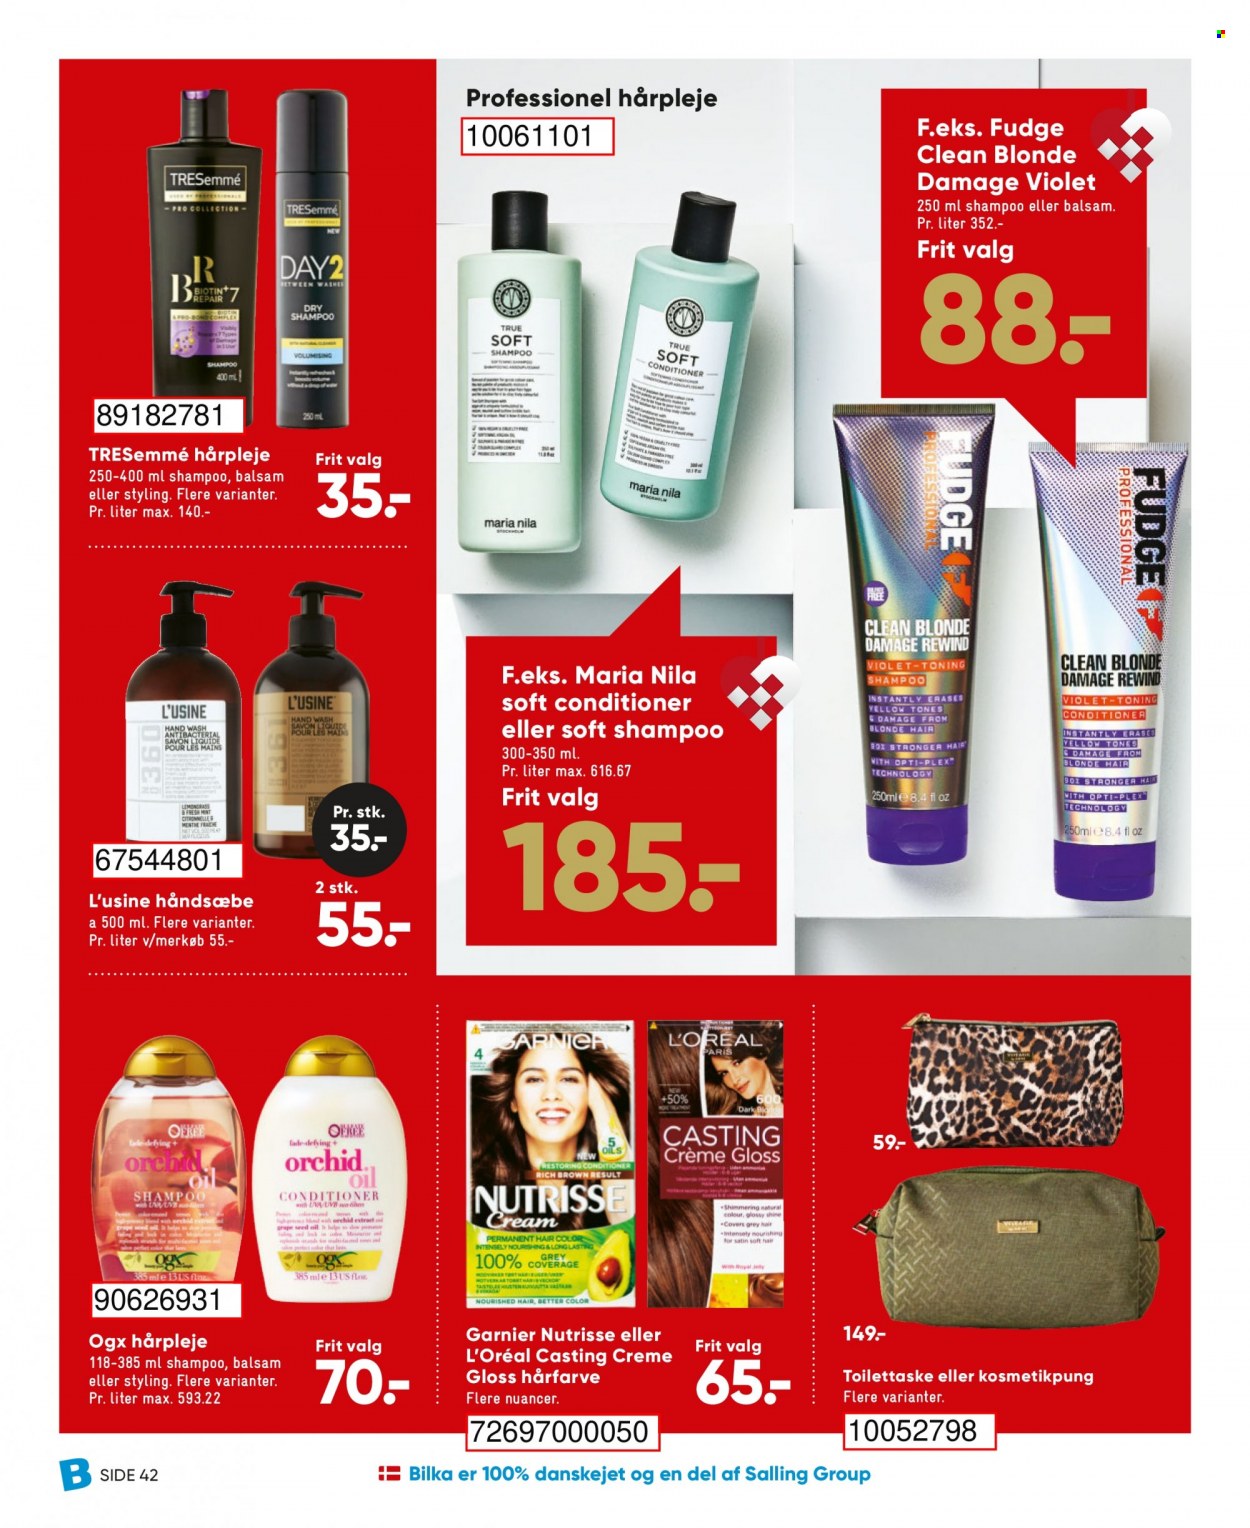 thumbnail - Bilka tilbud  - 26.11.2021 - 2.12.2021 - tilbudsprodukter - Garnier, L'Oréal Paris, OGX, fudge, håndsæbe, shampoo, TRESemmé, hårfarve, hårpleje, toilettaske. Side 54.